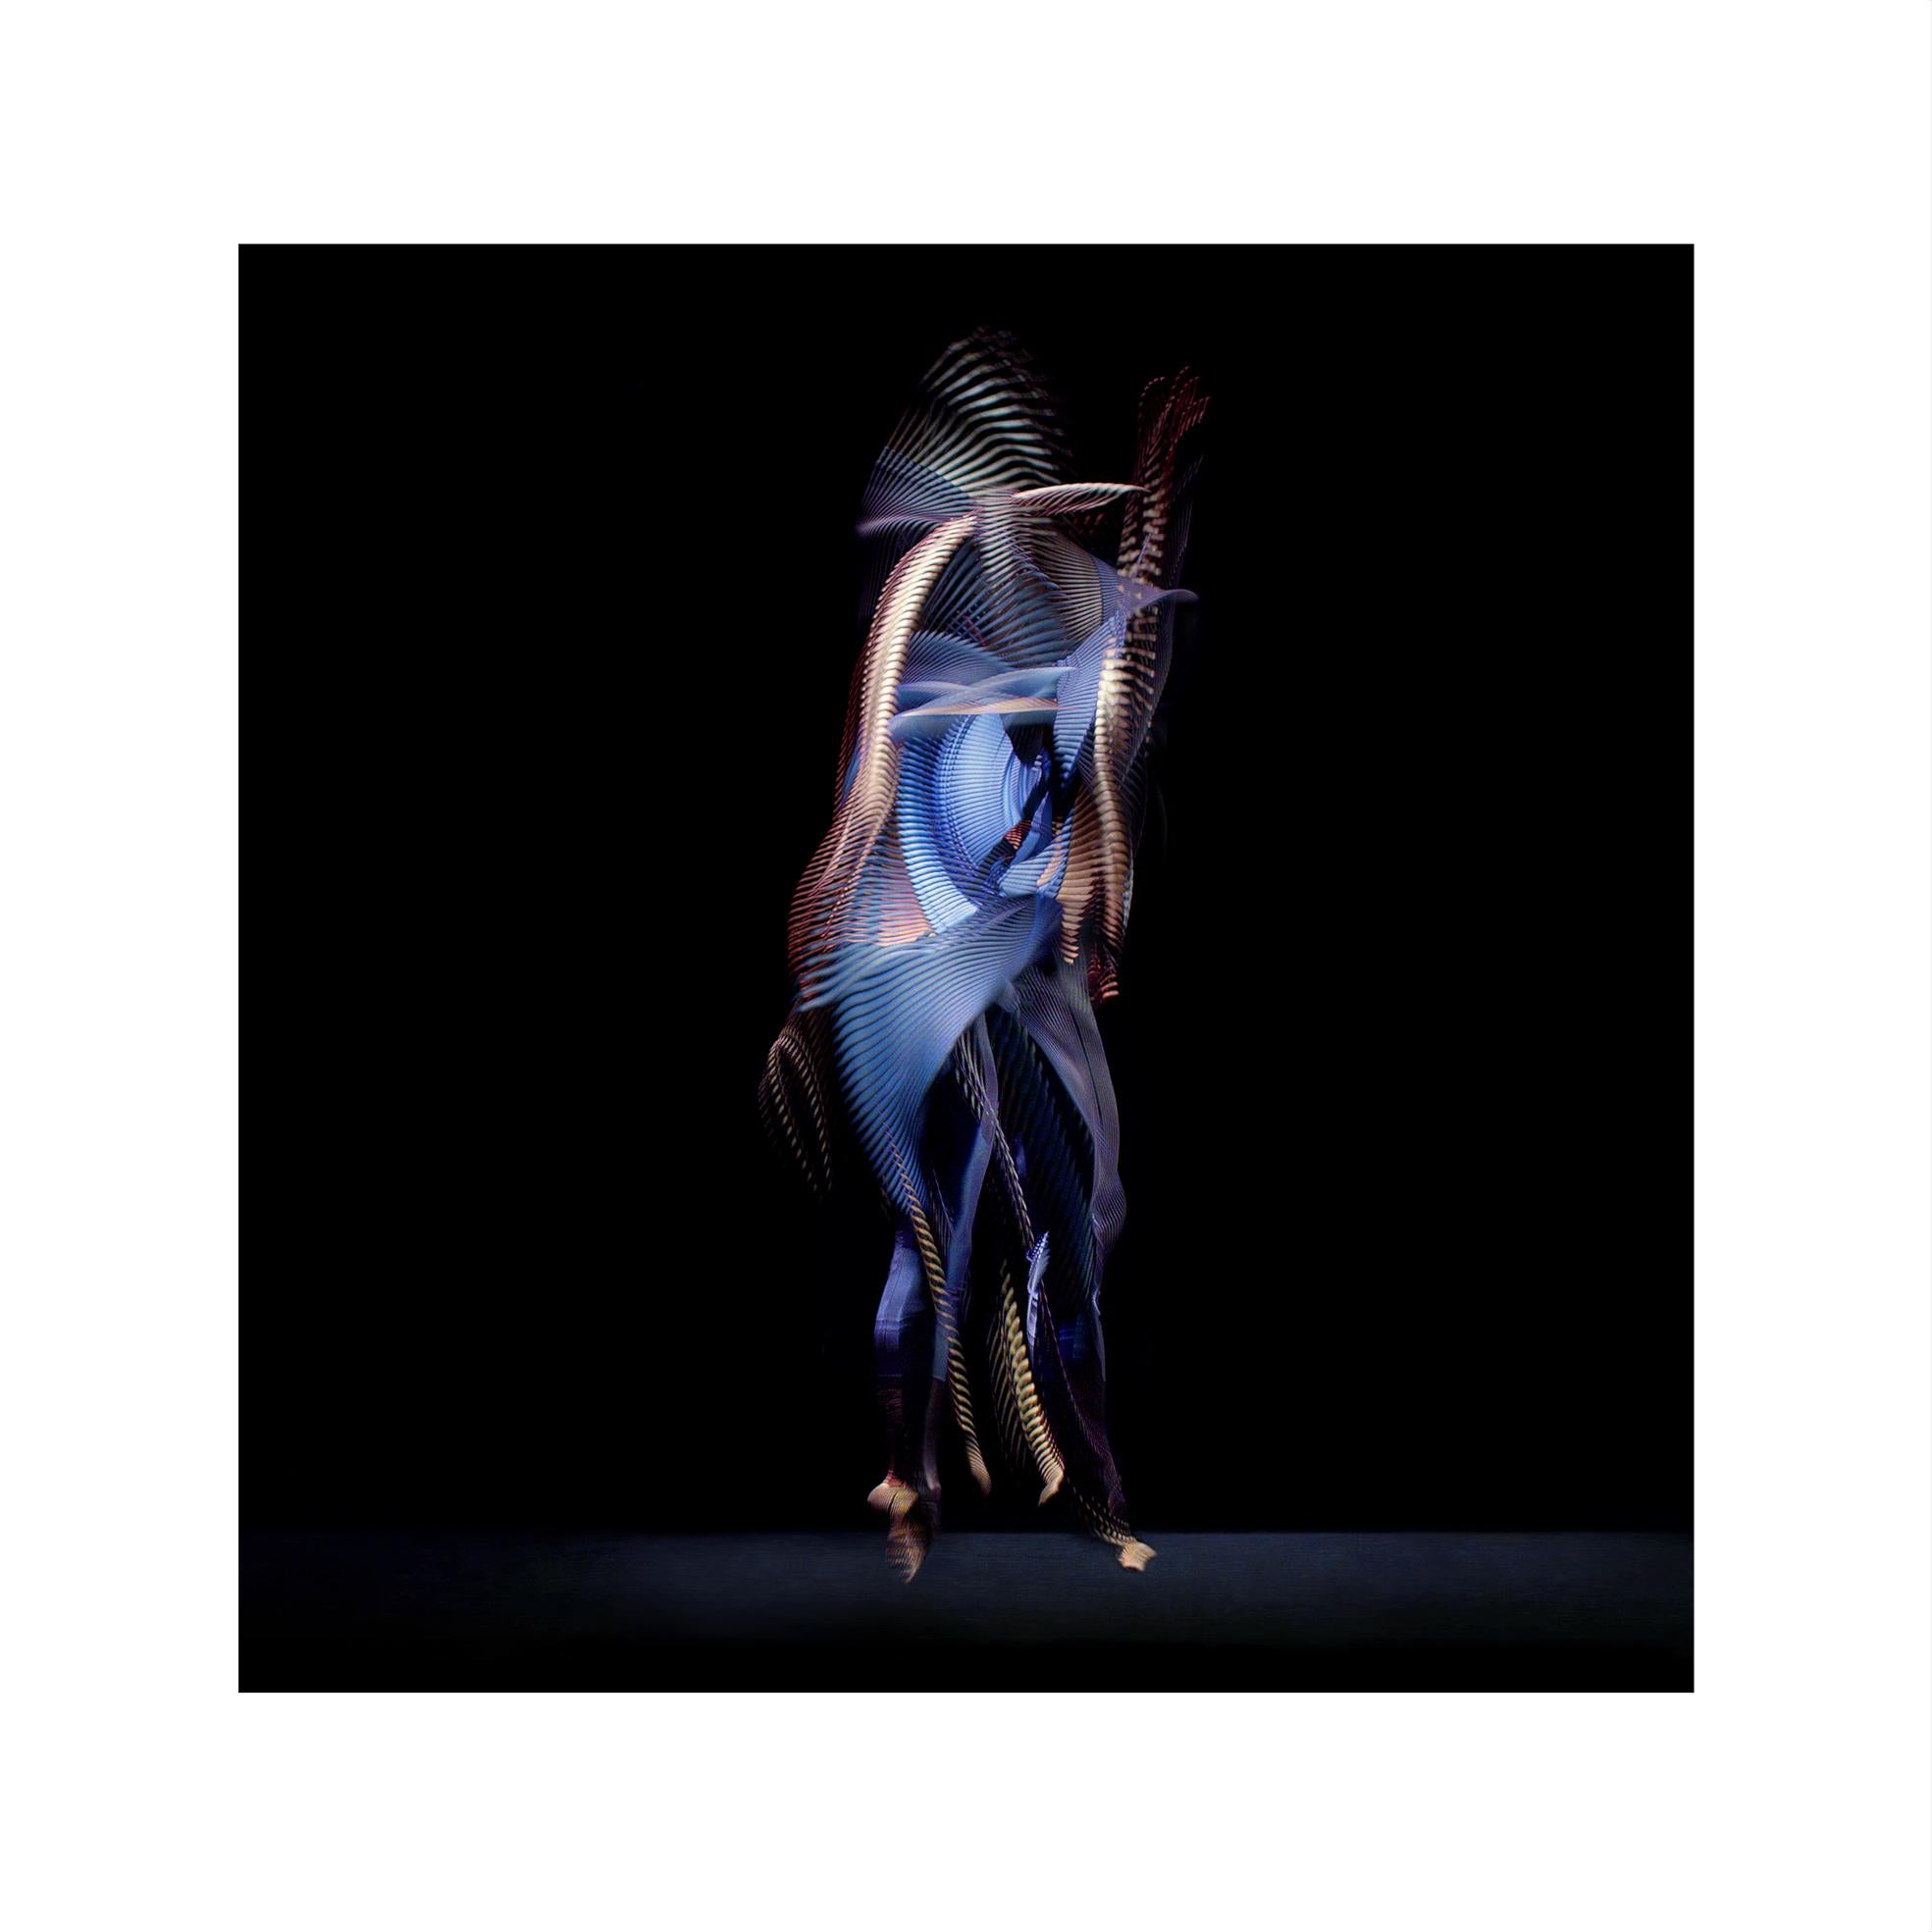 Giles Revell      Portrait Photograph – Abstrakte Tänzer, Dunkelblau, 5, 2019 von Giles Revell – Fotografie, Ballett, Schwarz